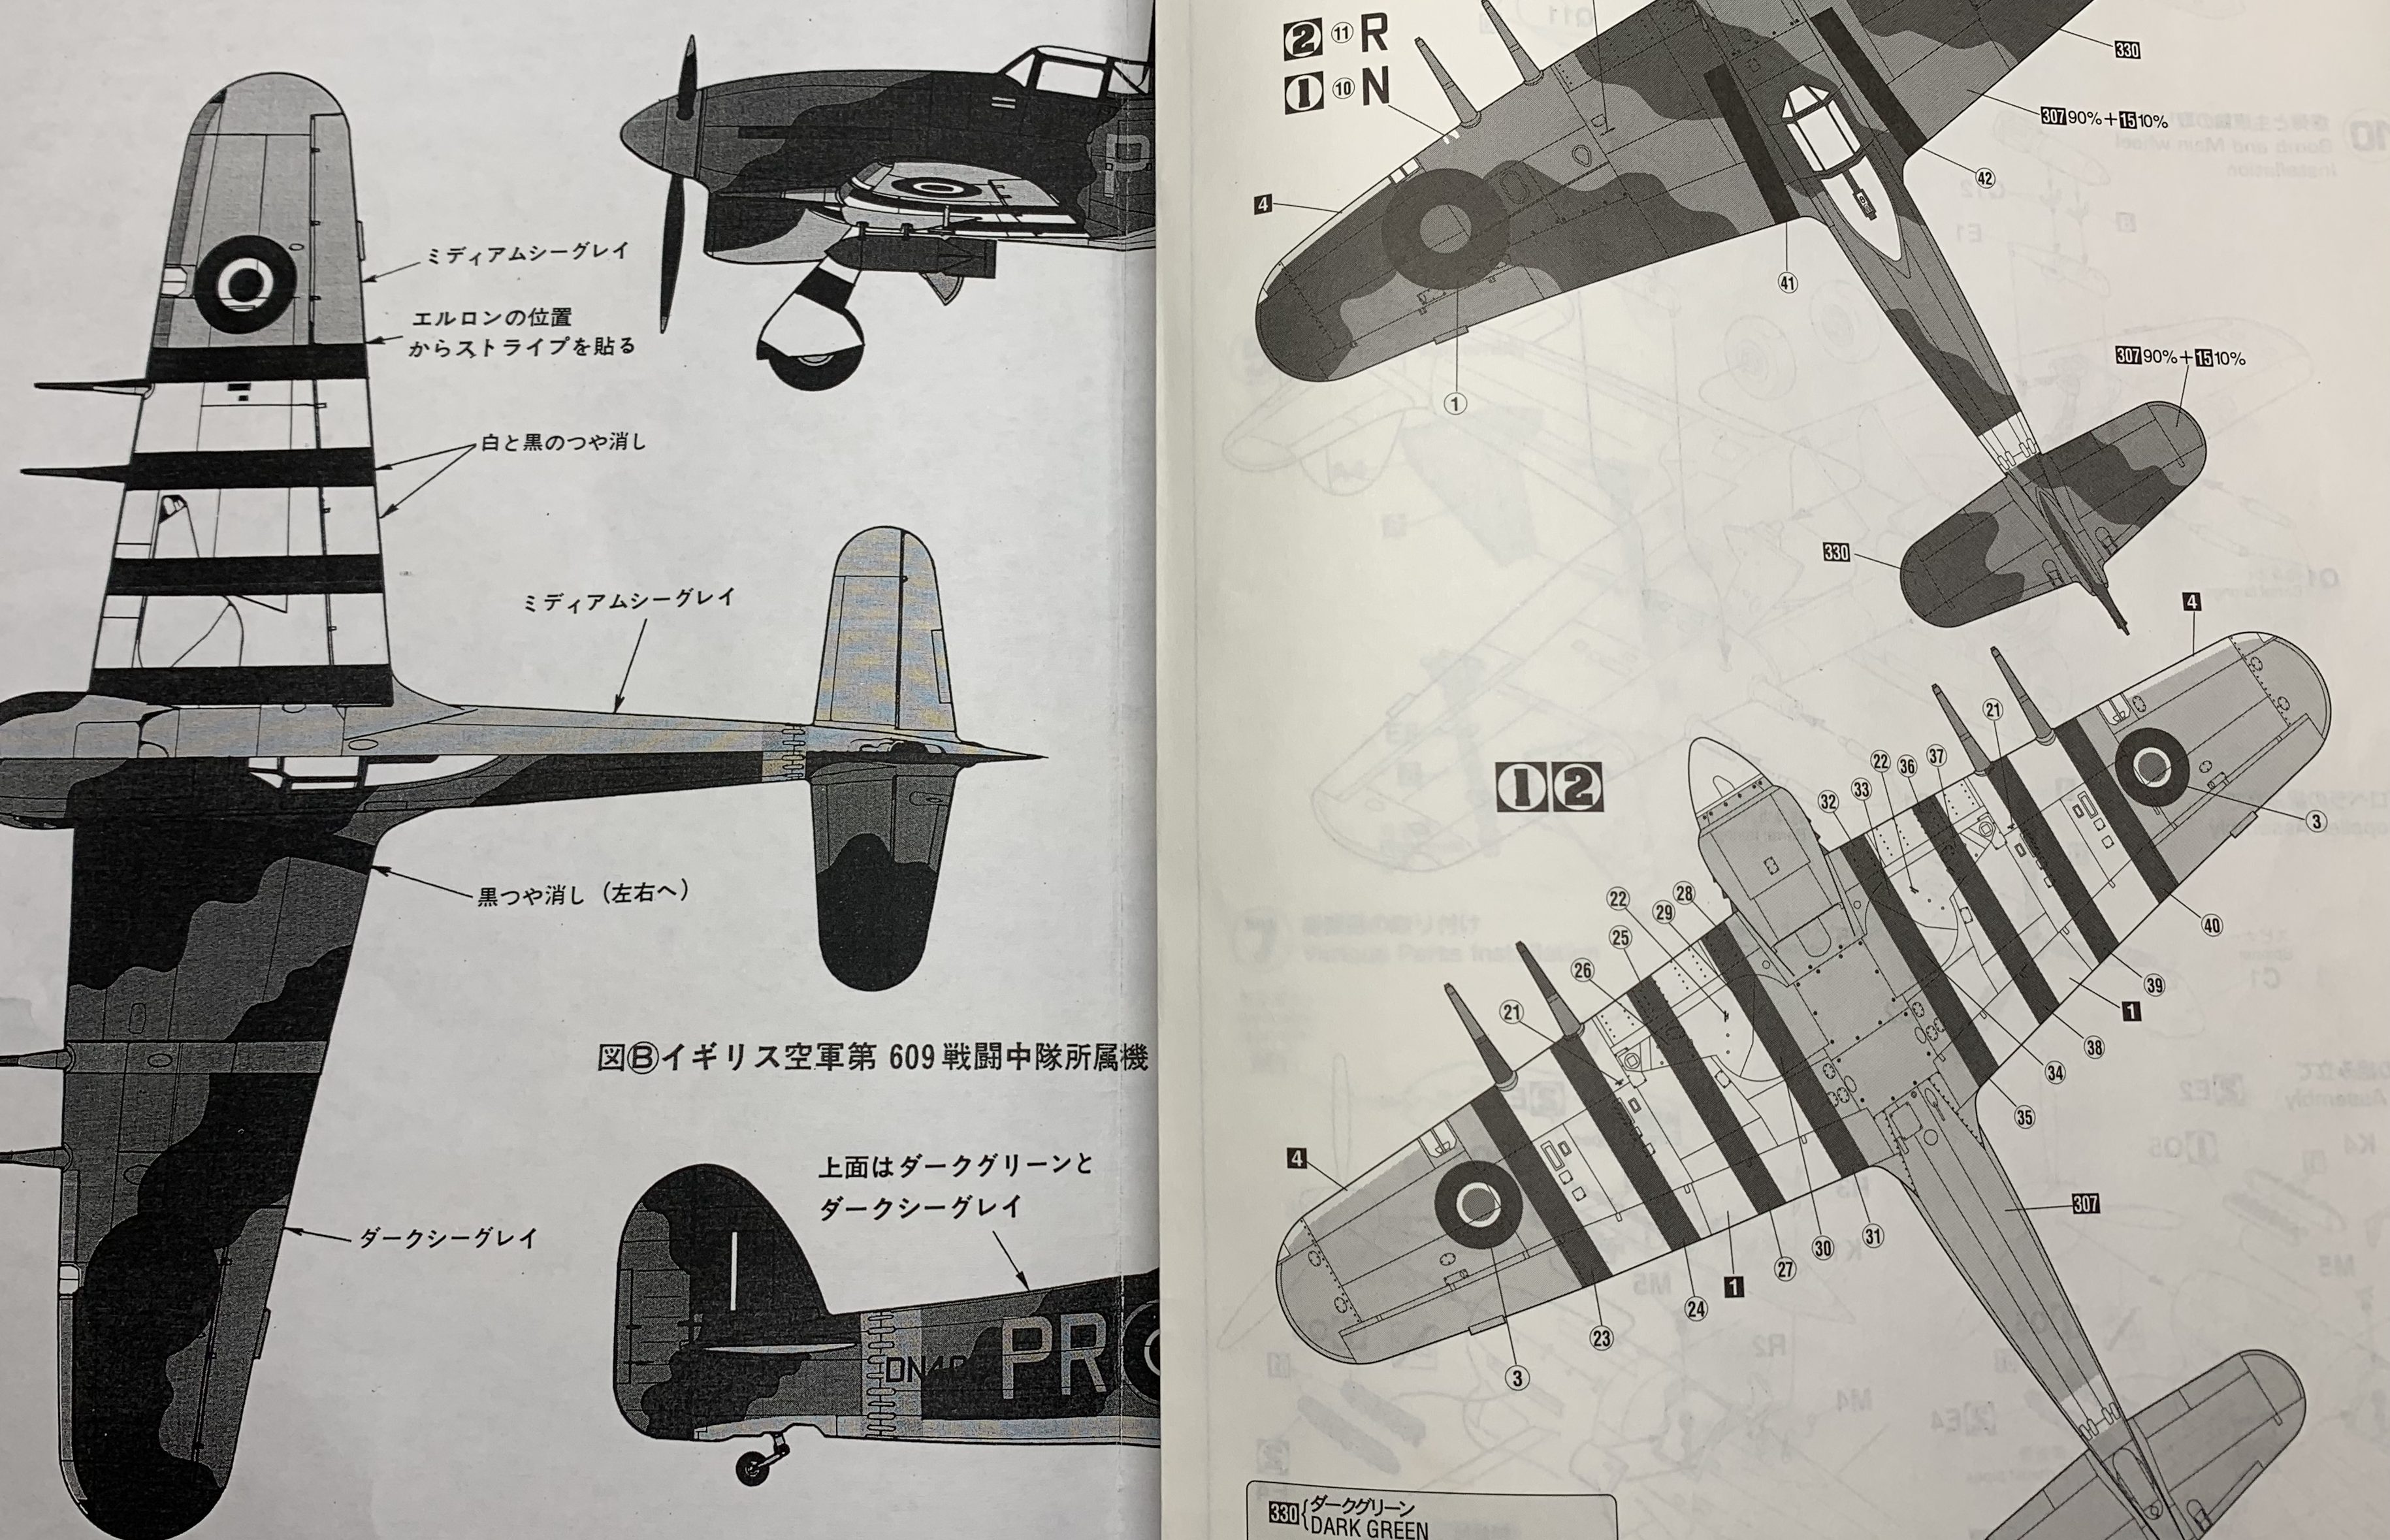 レベル 1/32 ホーカー タイフーン 製作記 | JUNSANのミニチュア航空博物館